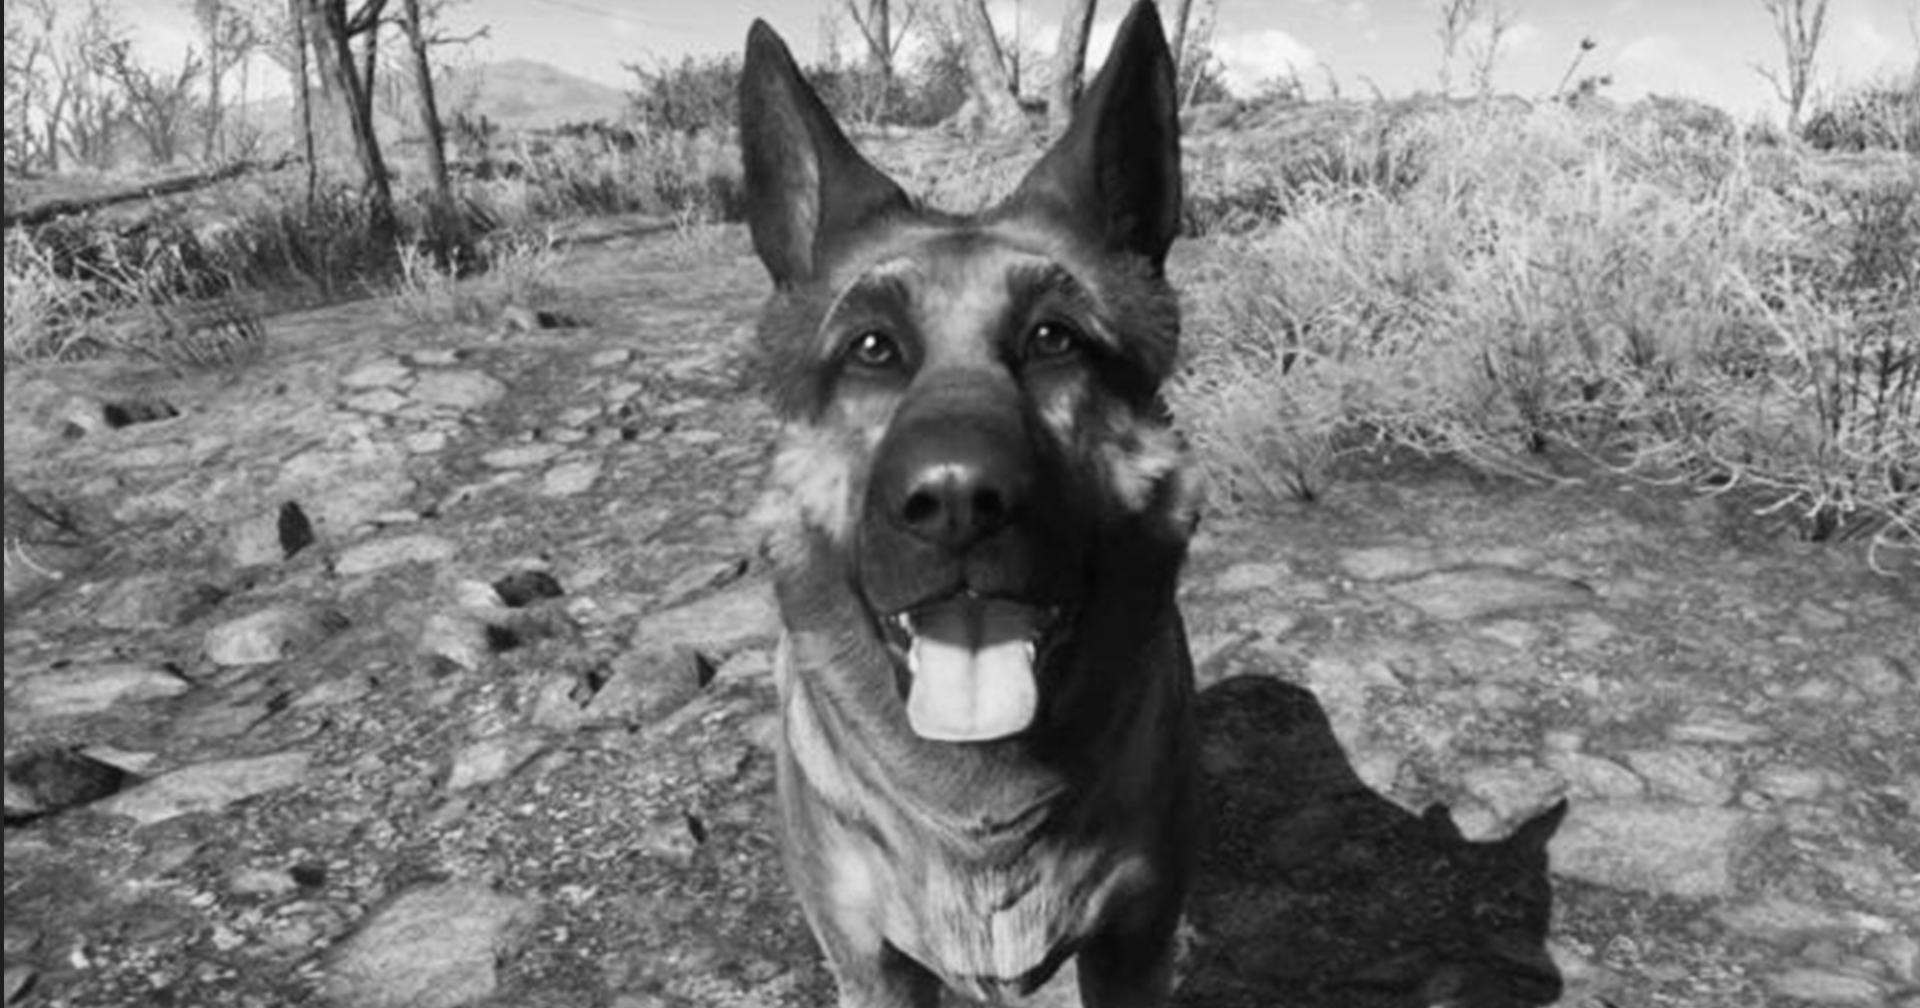 สุนัขผู้อยู่เบื้องหลัง ‘Dogmeat’ จาก Fallout 4 ได้เสียชีวิตลงแล้ว